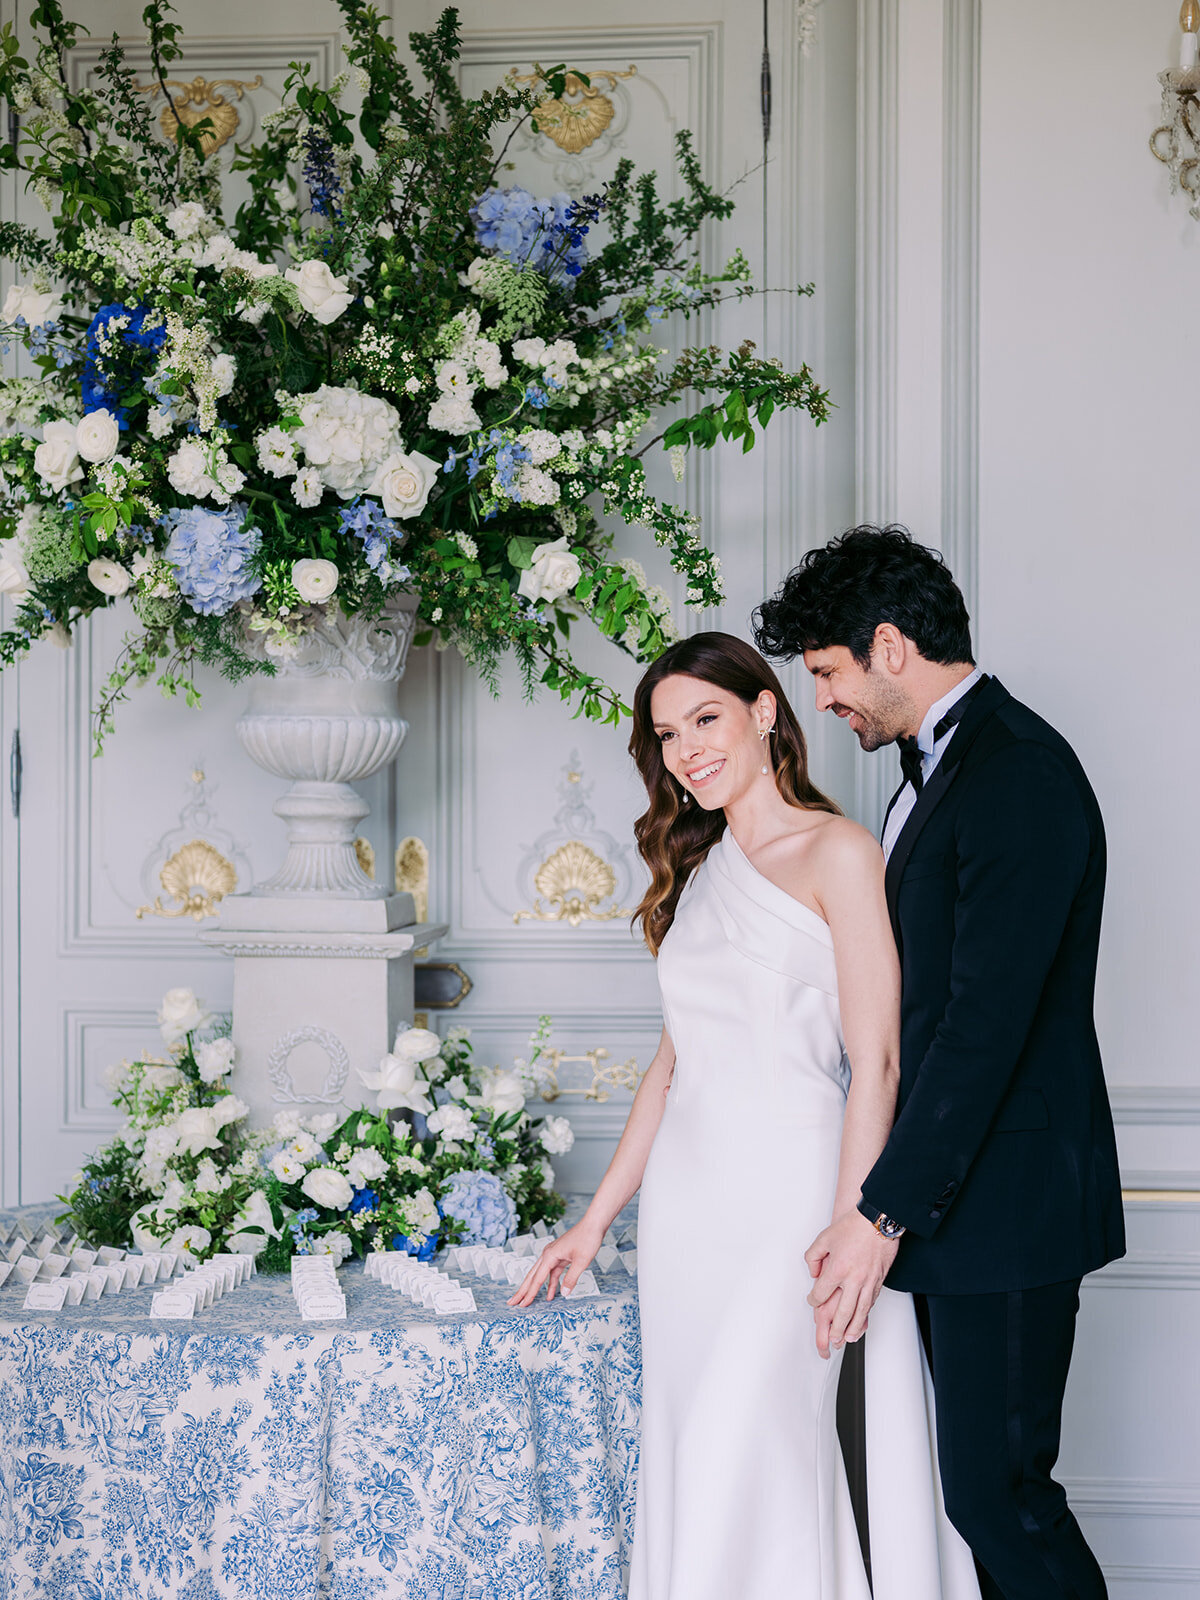 cesarempiaze-photographer-paris-wedding-chateau-_-131